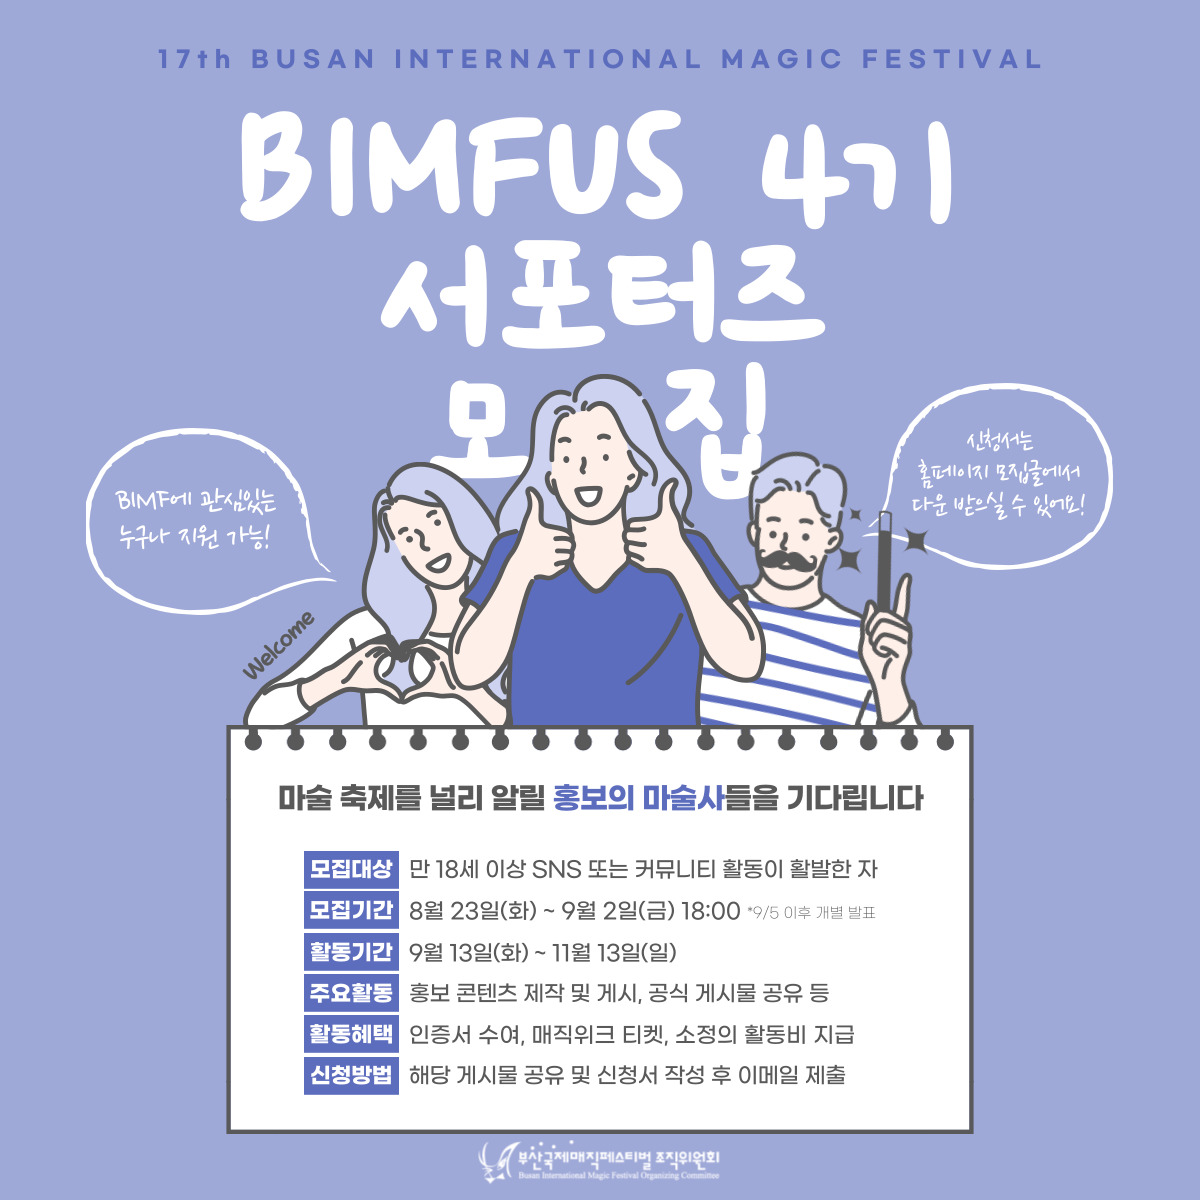 제17회 부산국제매직페스티벌 BIMFUS 4기 서포터즈 모집